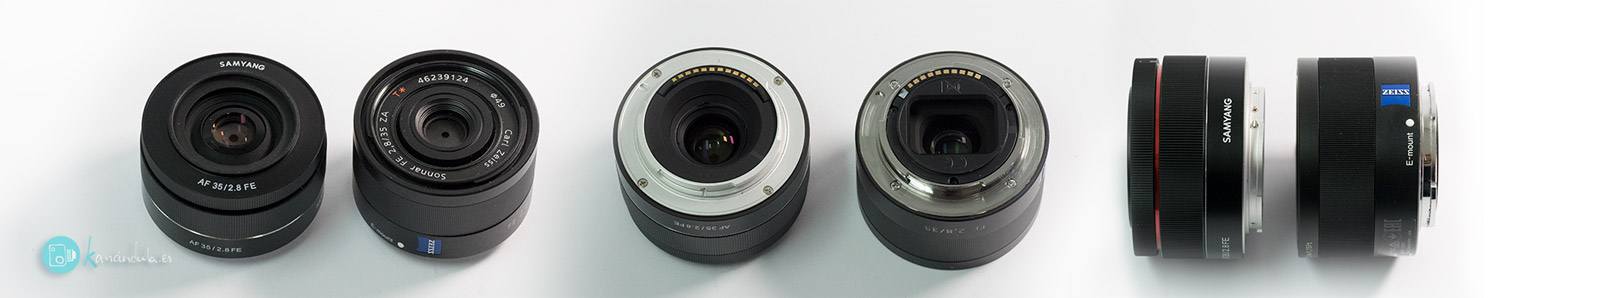 lente-AF-35mm-f2.8-SAMYANG-Español review